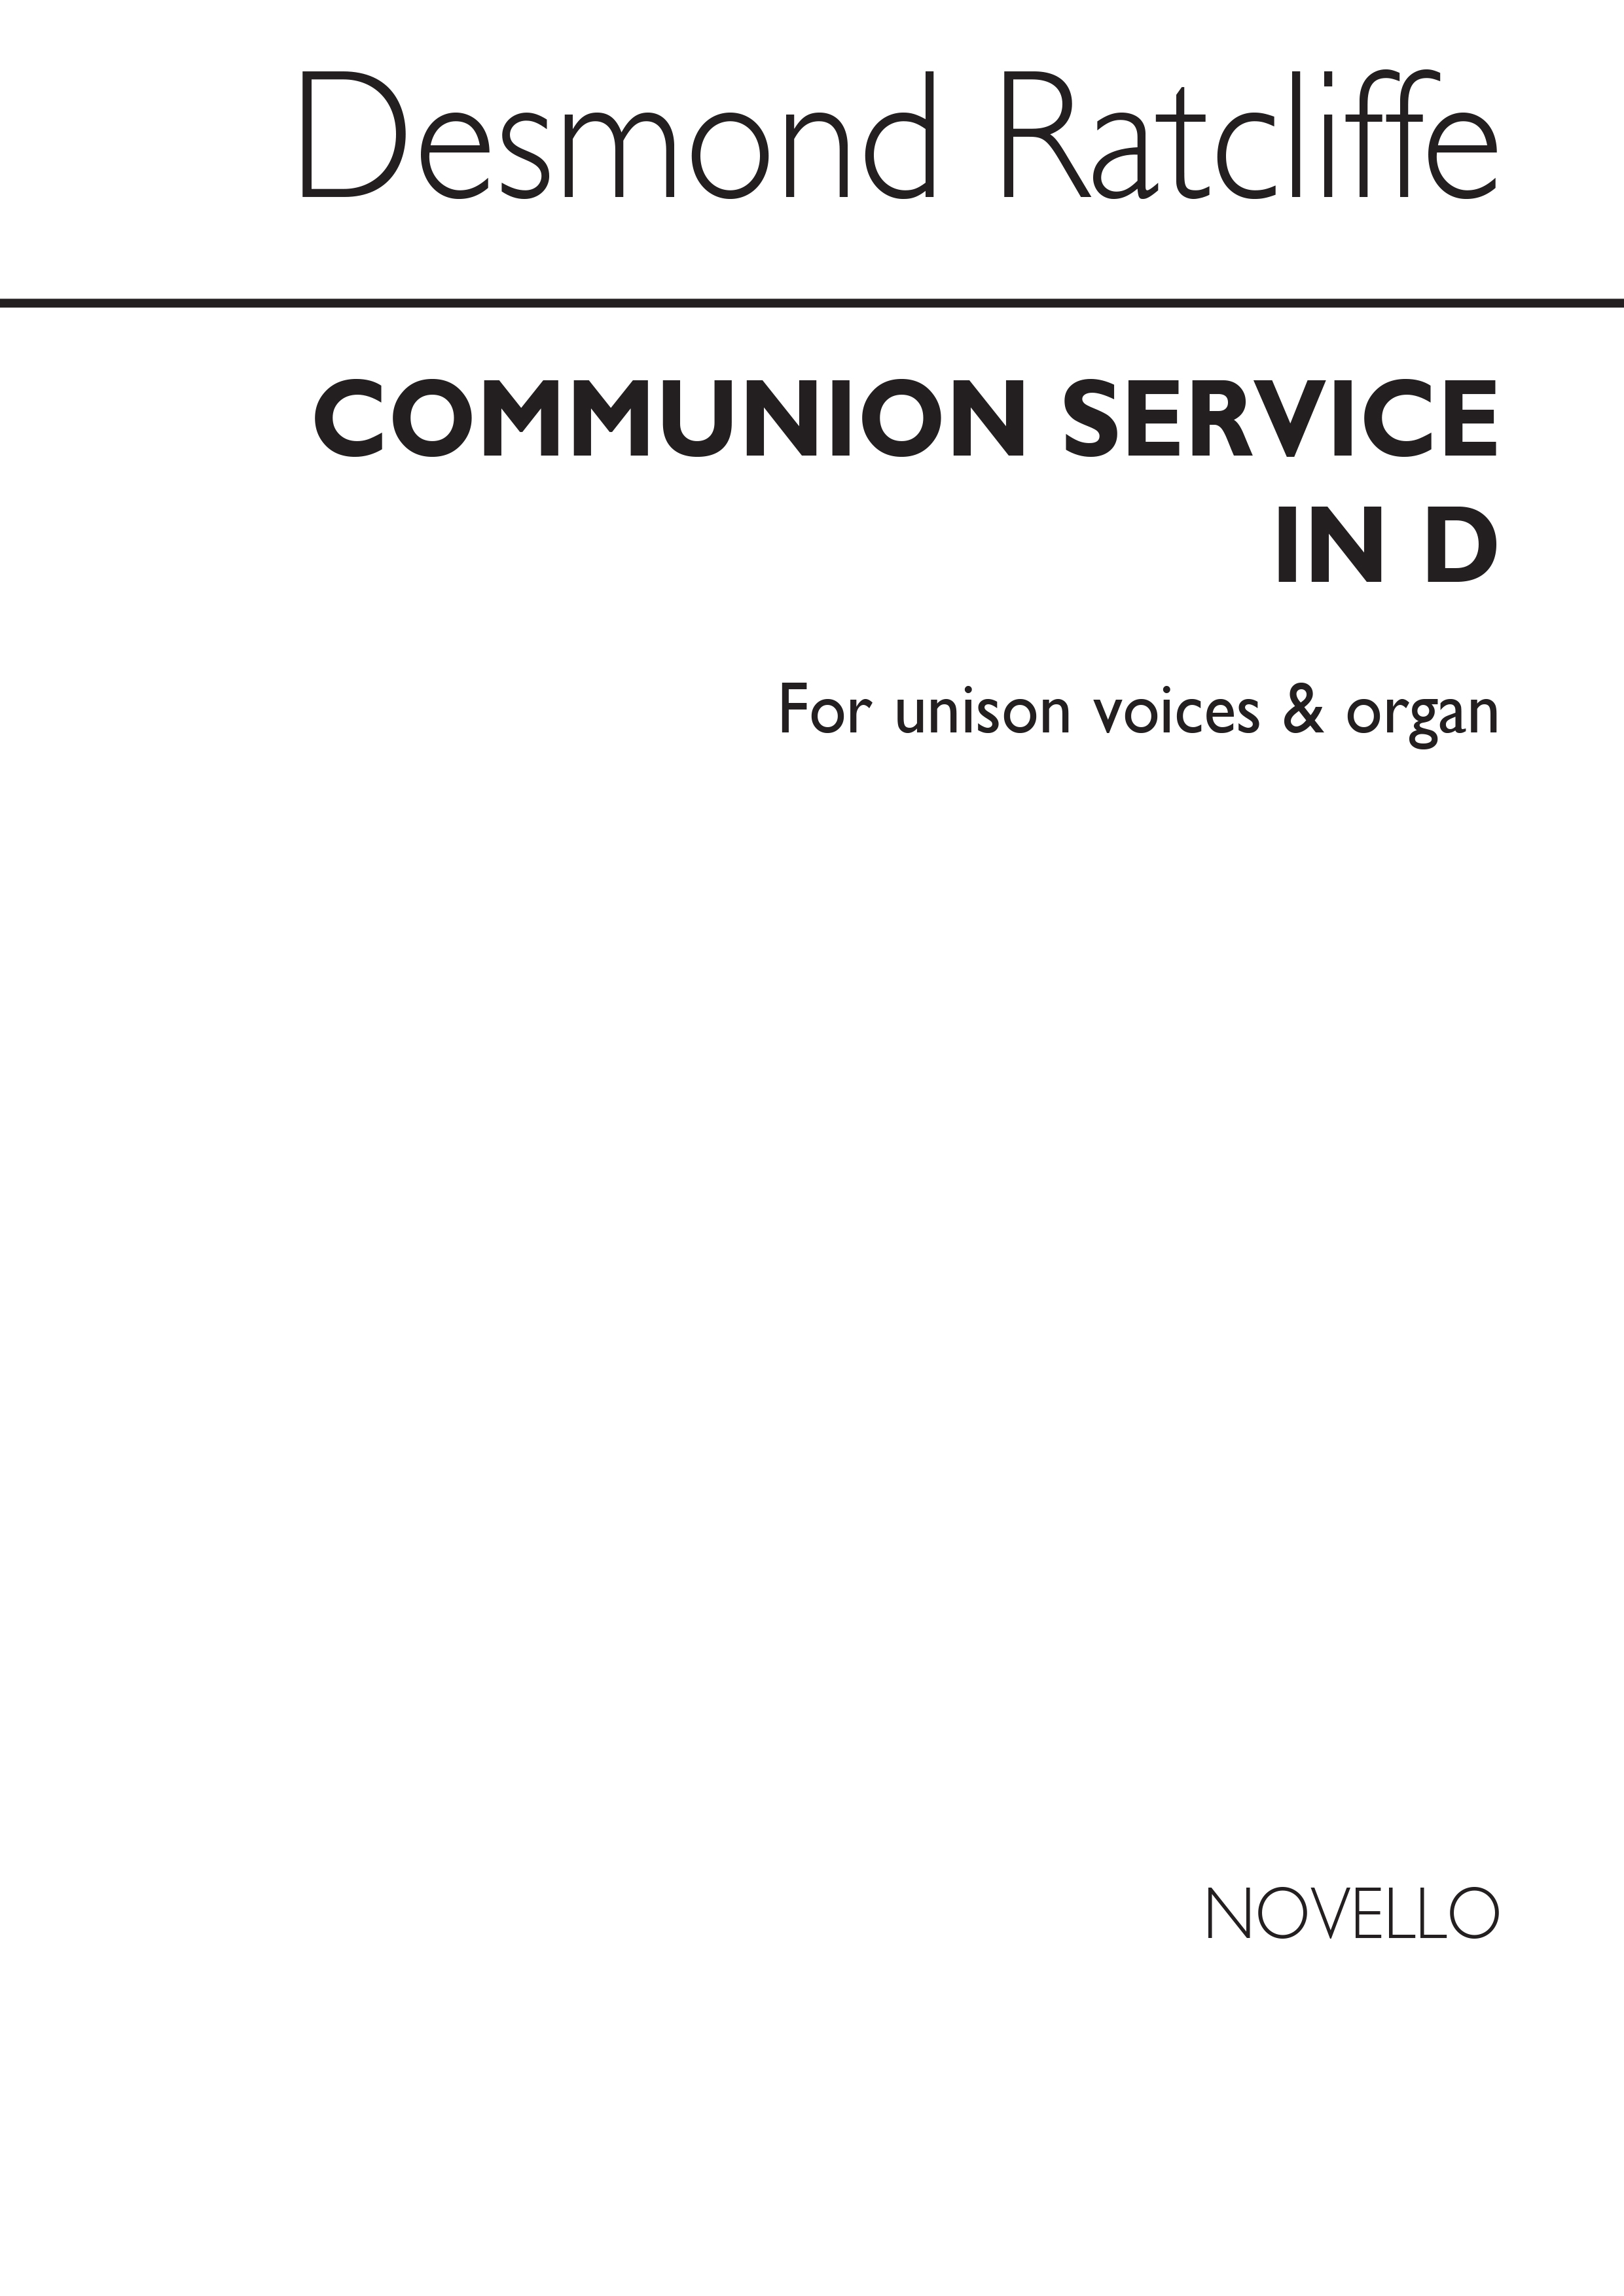 Desmond Ratcliffe: Communion Service In D Unison/Organ